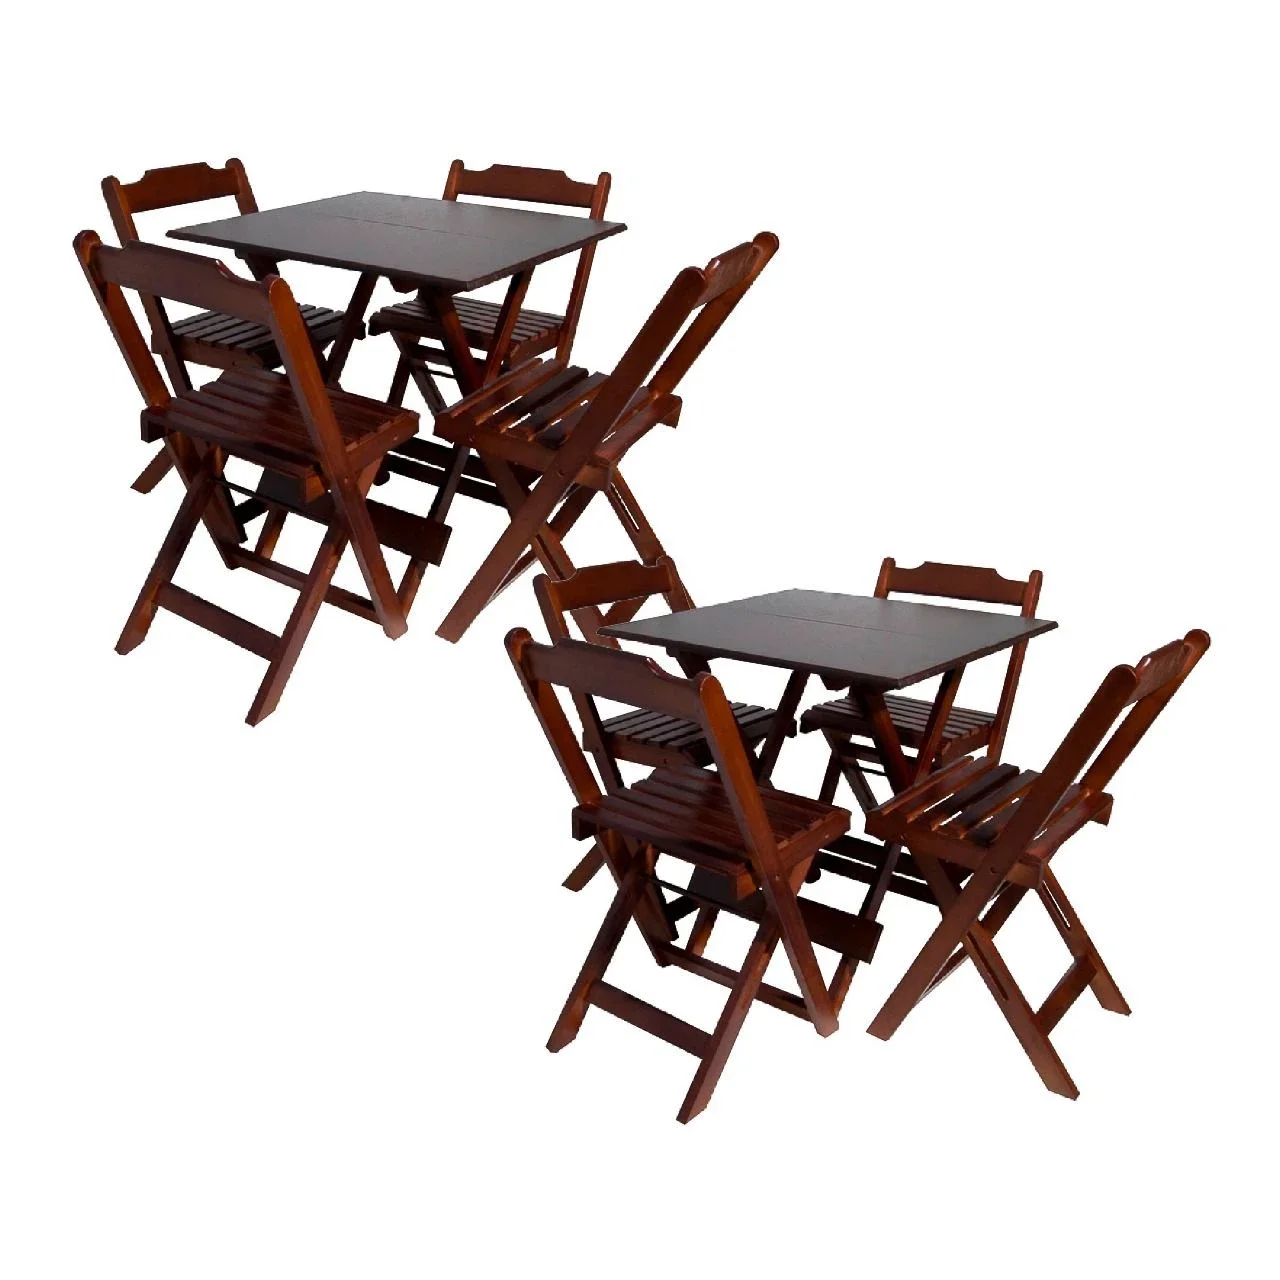 Kit com 2 Conjuntos de Jogo de Mesa 70x70 com 4 Cadeiras Dobráveis - Dg Móveis:imbuia